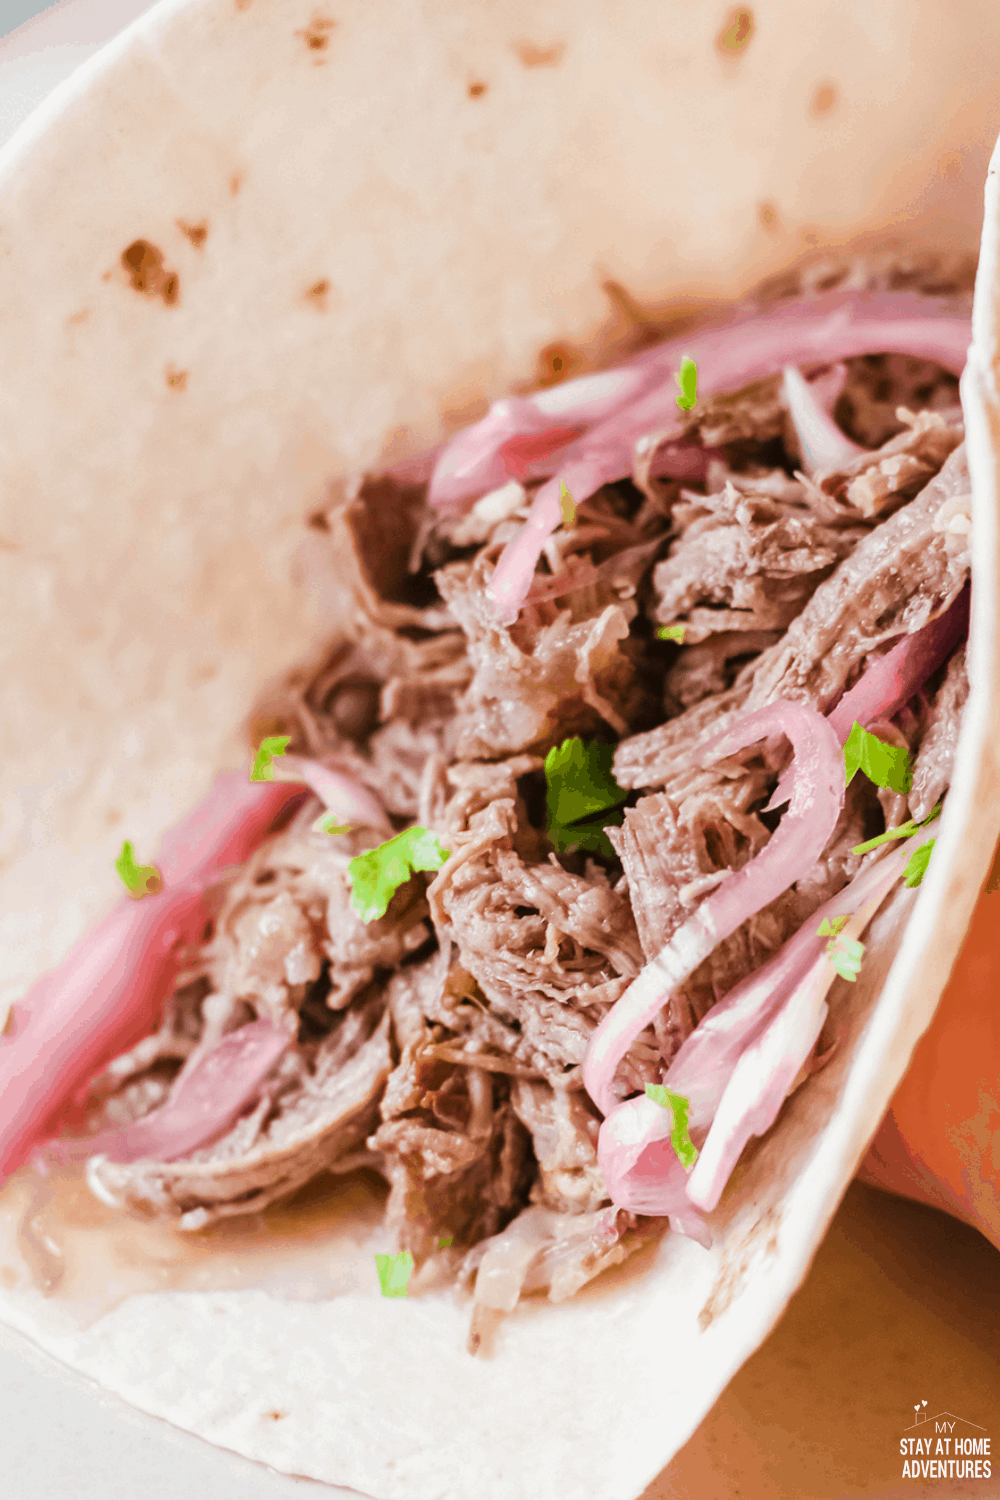  Les tacos de bœuf râpé (tacos de Carne Deshebrada) sont des tacos tendres, savoureux et étonnants que votre famille vous demandera maintes et maintes fois. #tacos #tacosdeshebrada #shreddedbeeftacos #tacotuesday via @mystayathome 